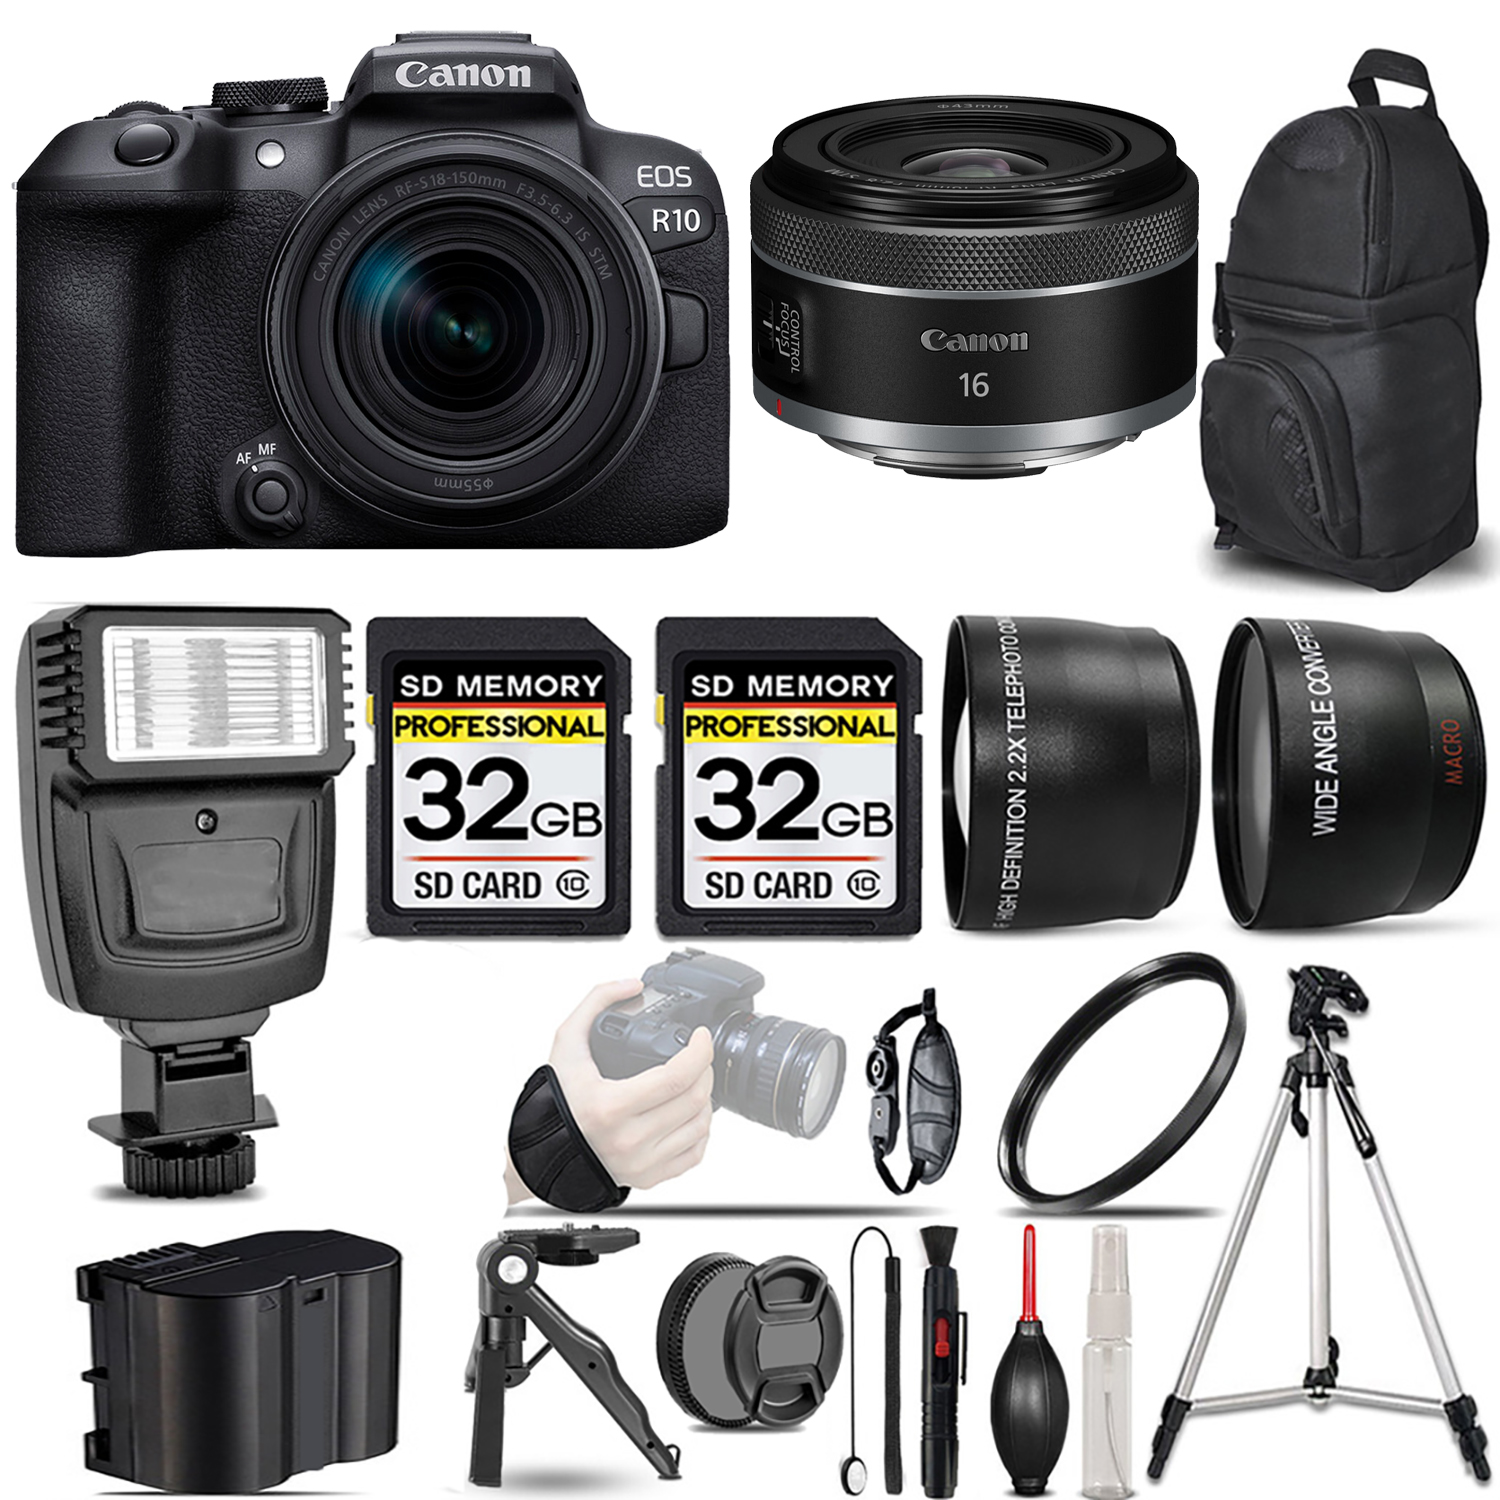 EOS R10 Camera + 18-150mm Lens + 16mm f/2.8 STM Lens + Flash + 64GB - Kit *FREE SHIPPING*